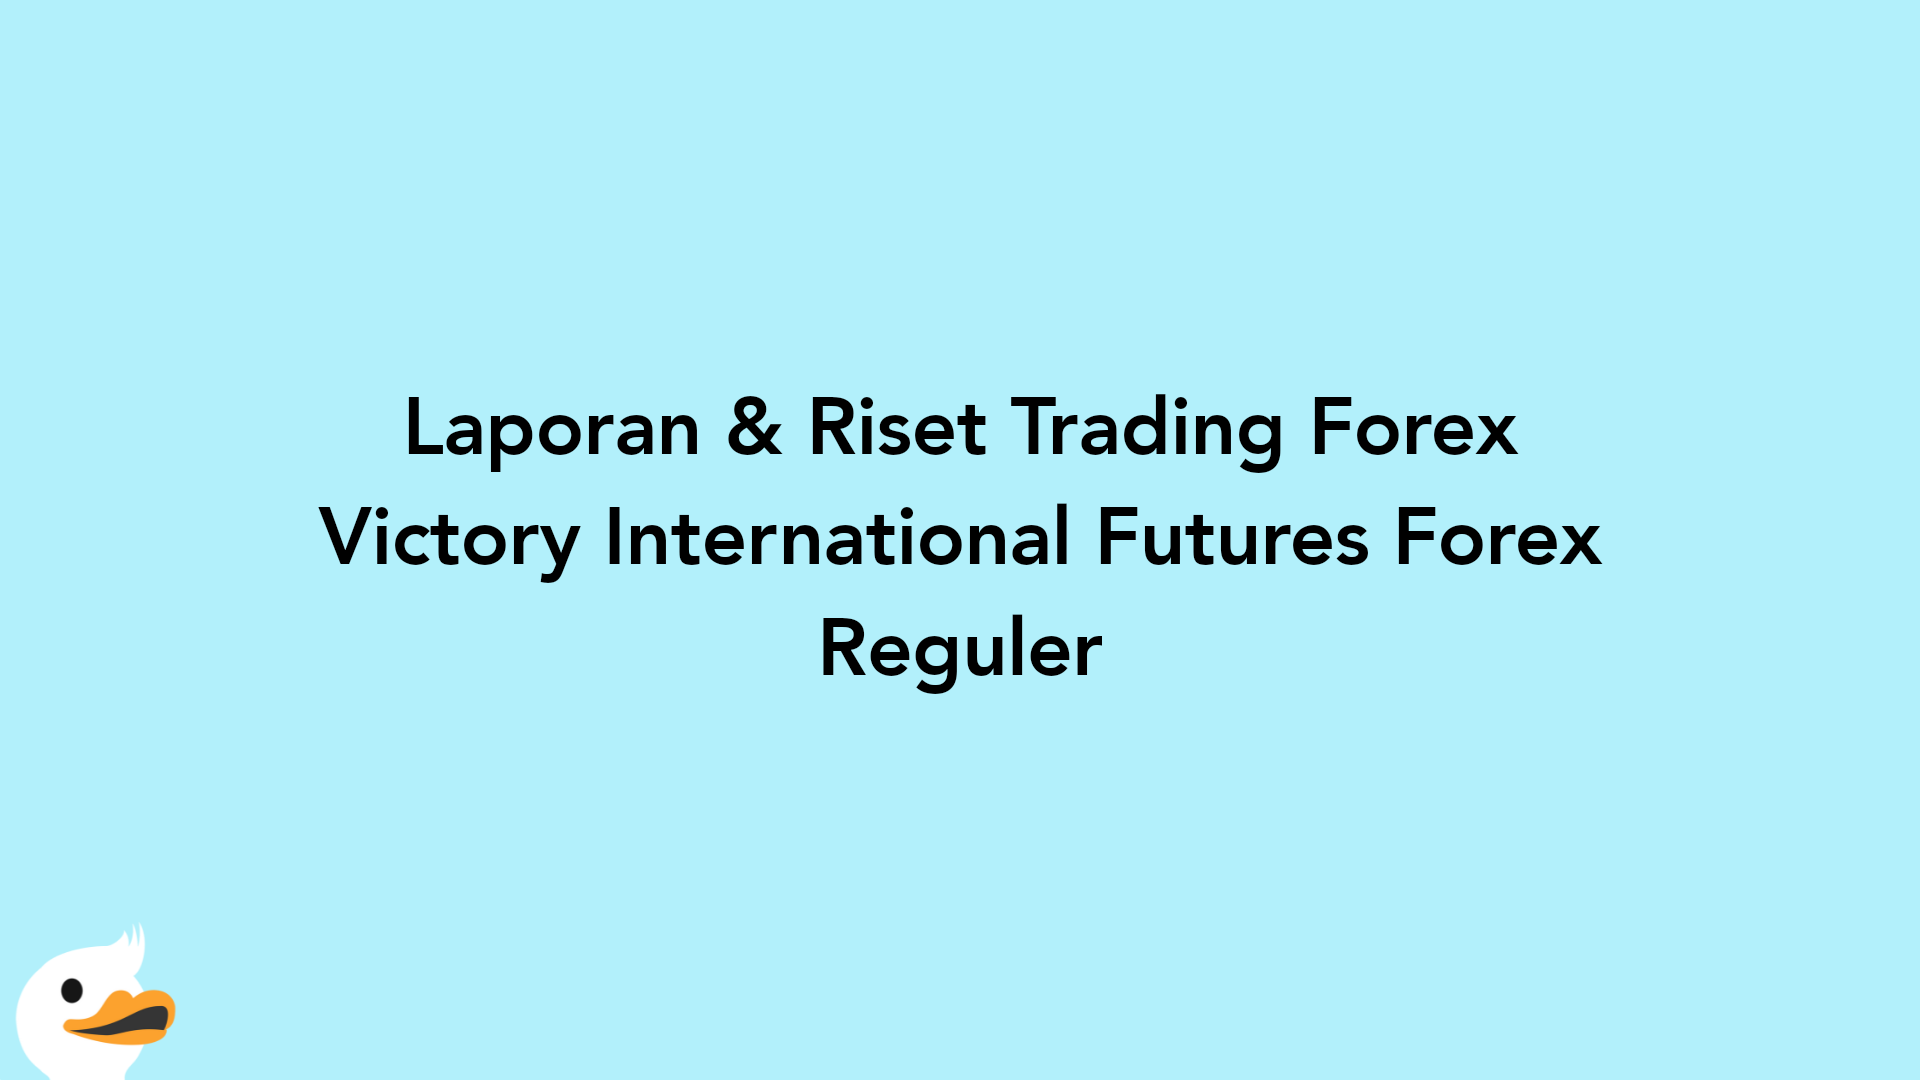 Laporan & Riset Trading Forex Victory International Futures Forex Reguler